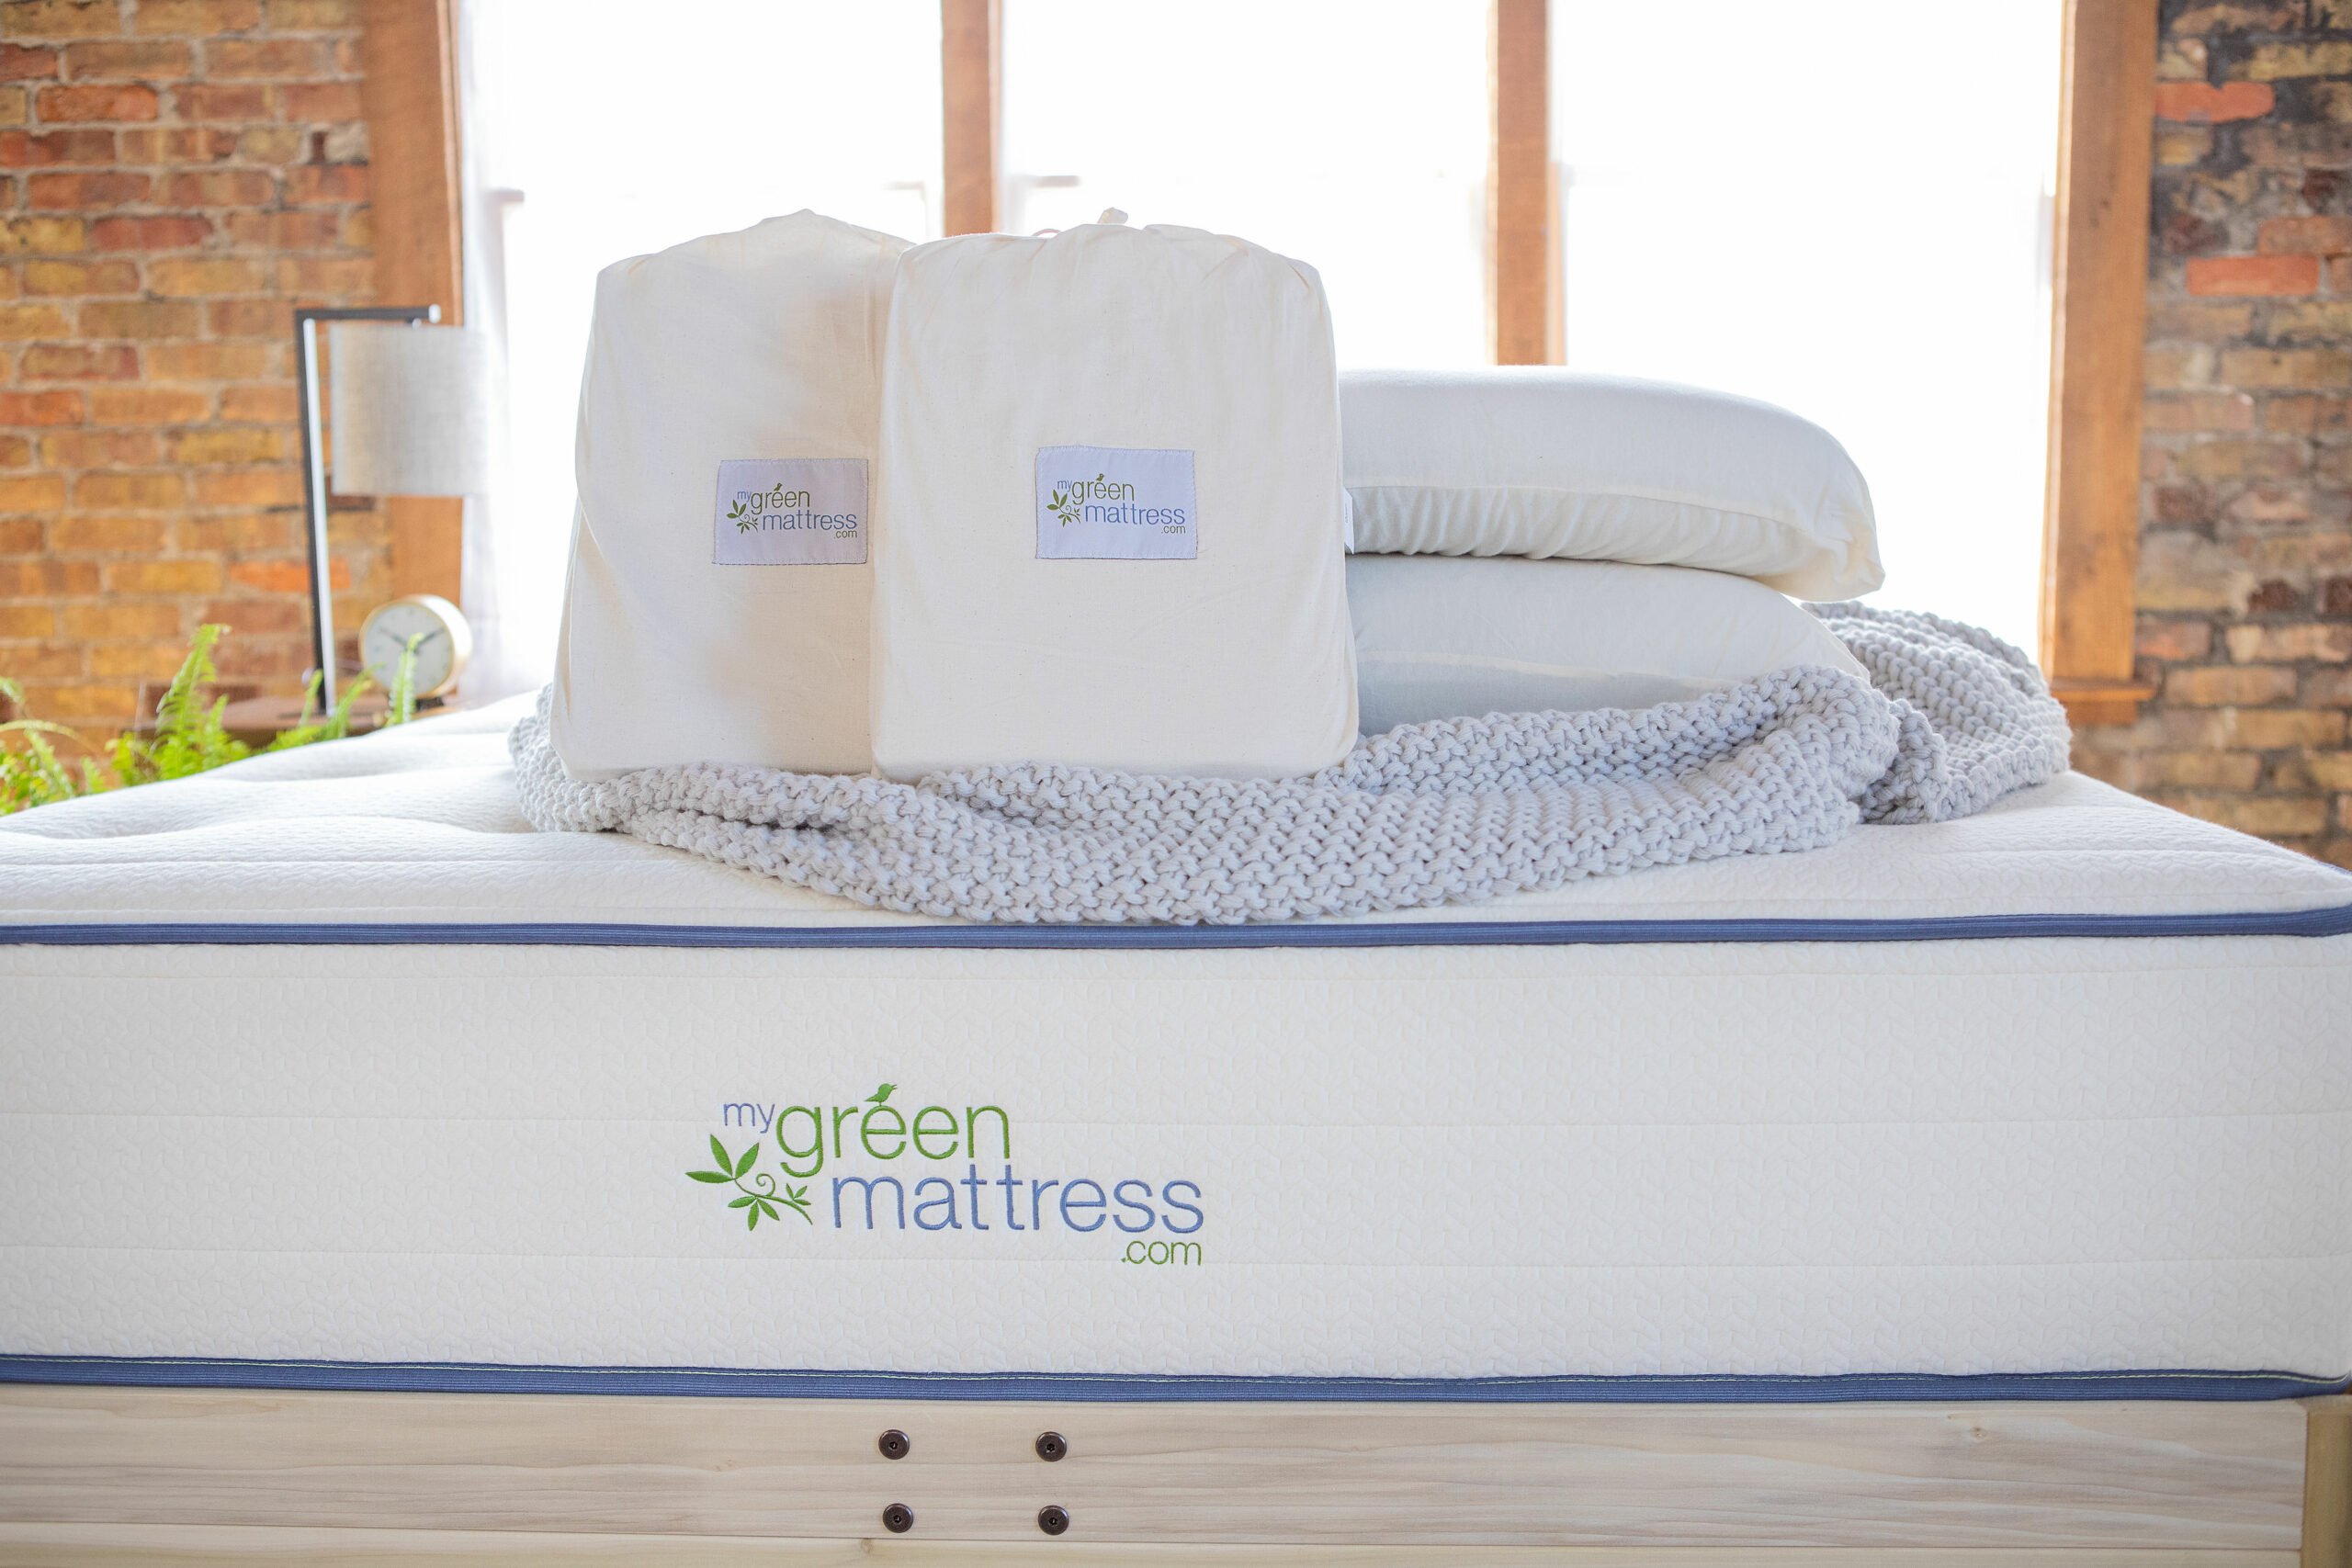 A My Green Mattress mattress and accessories.